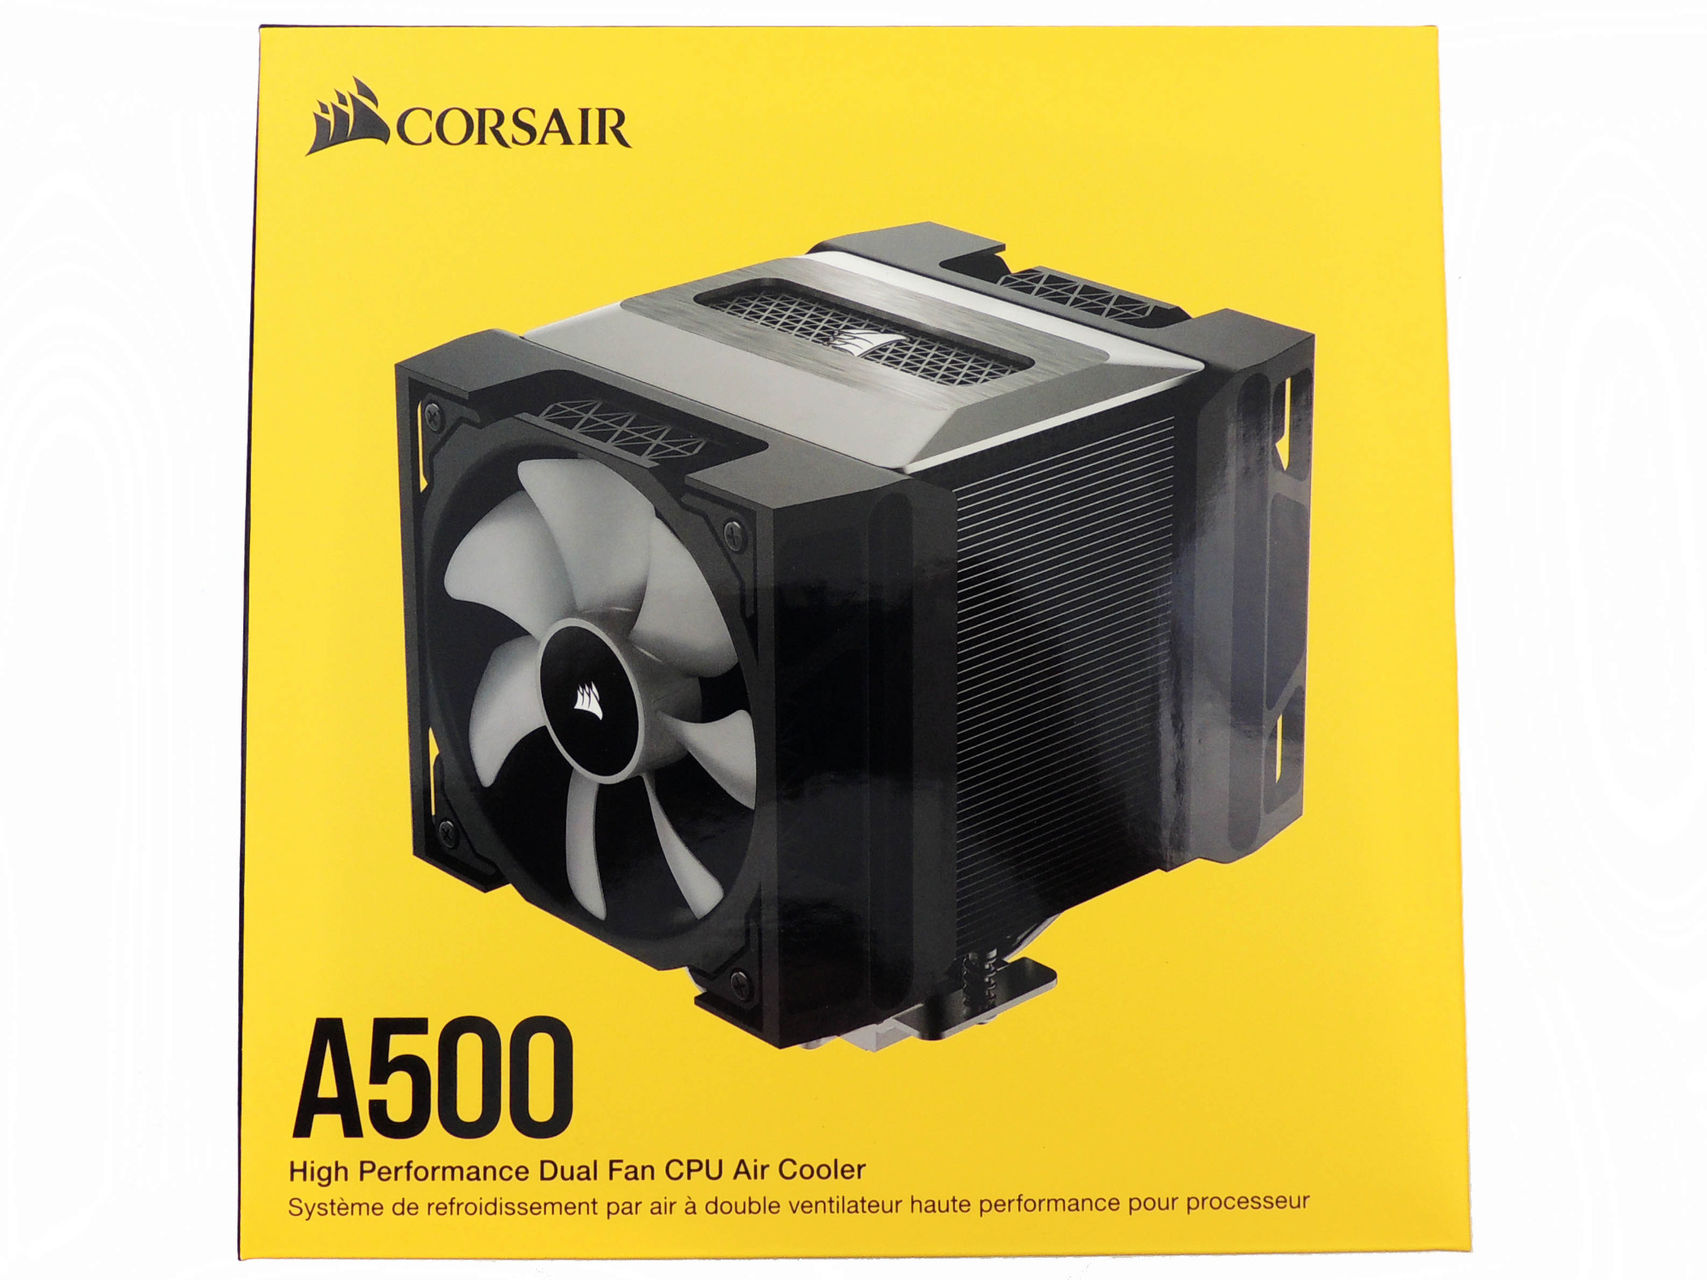 Corsair Dual Fan CPU Cooler Review - Corsair A500 Fan CPU Cooler